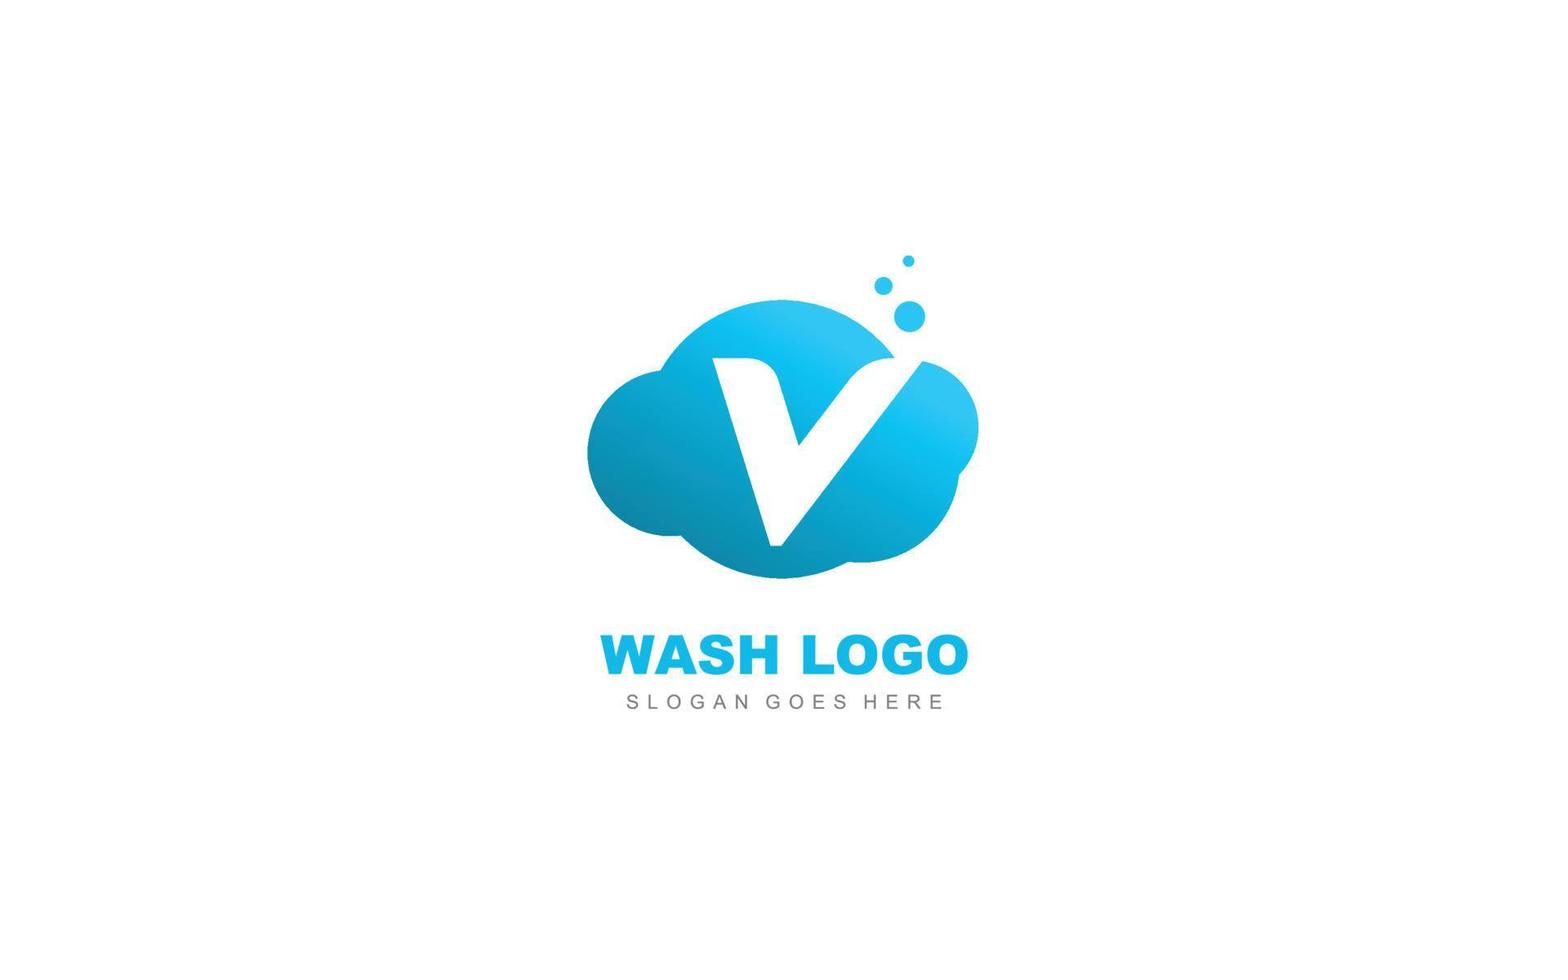 nube de logotipo v para empresa de marca. ilustración de vector de plantilla de carta para su marca.